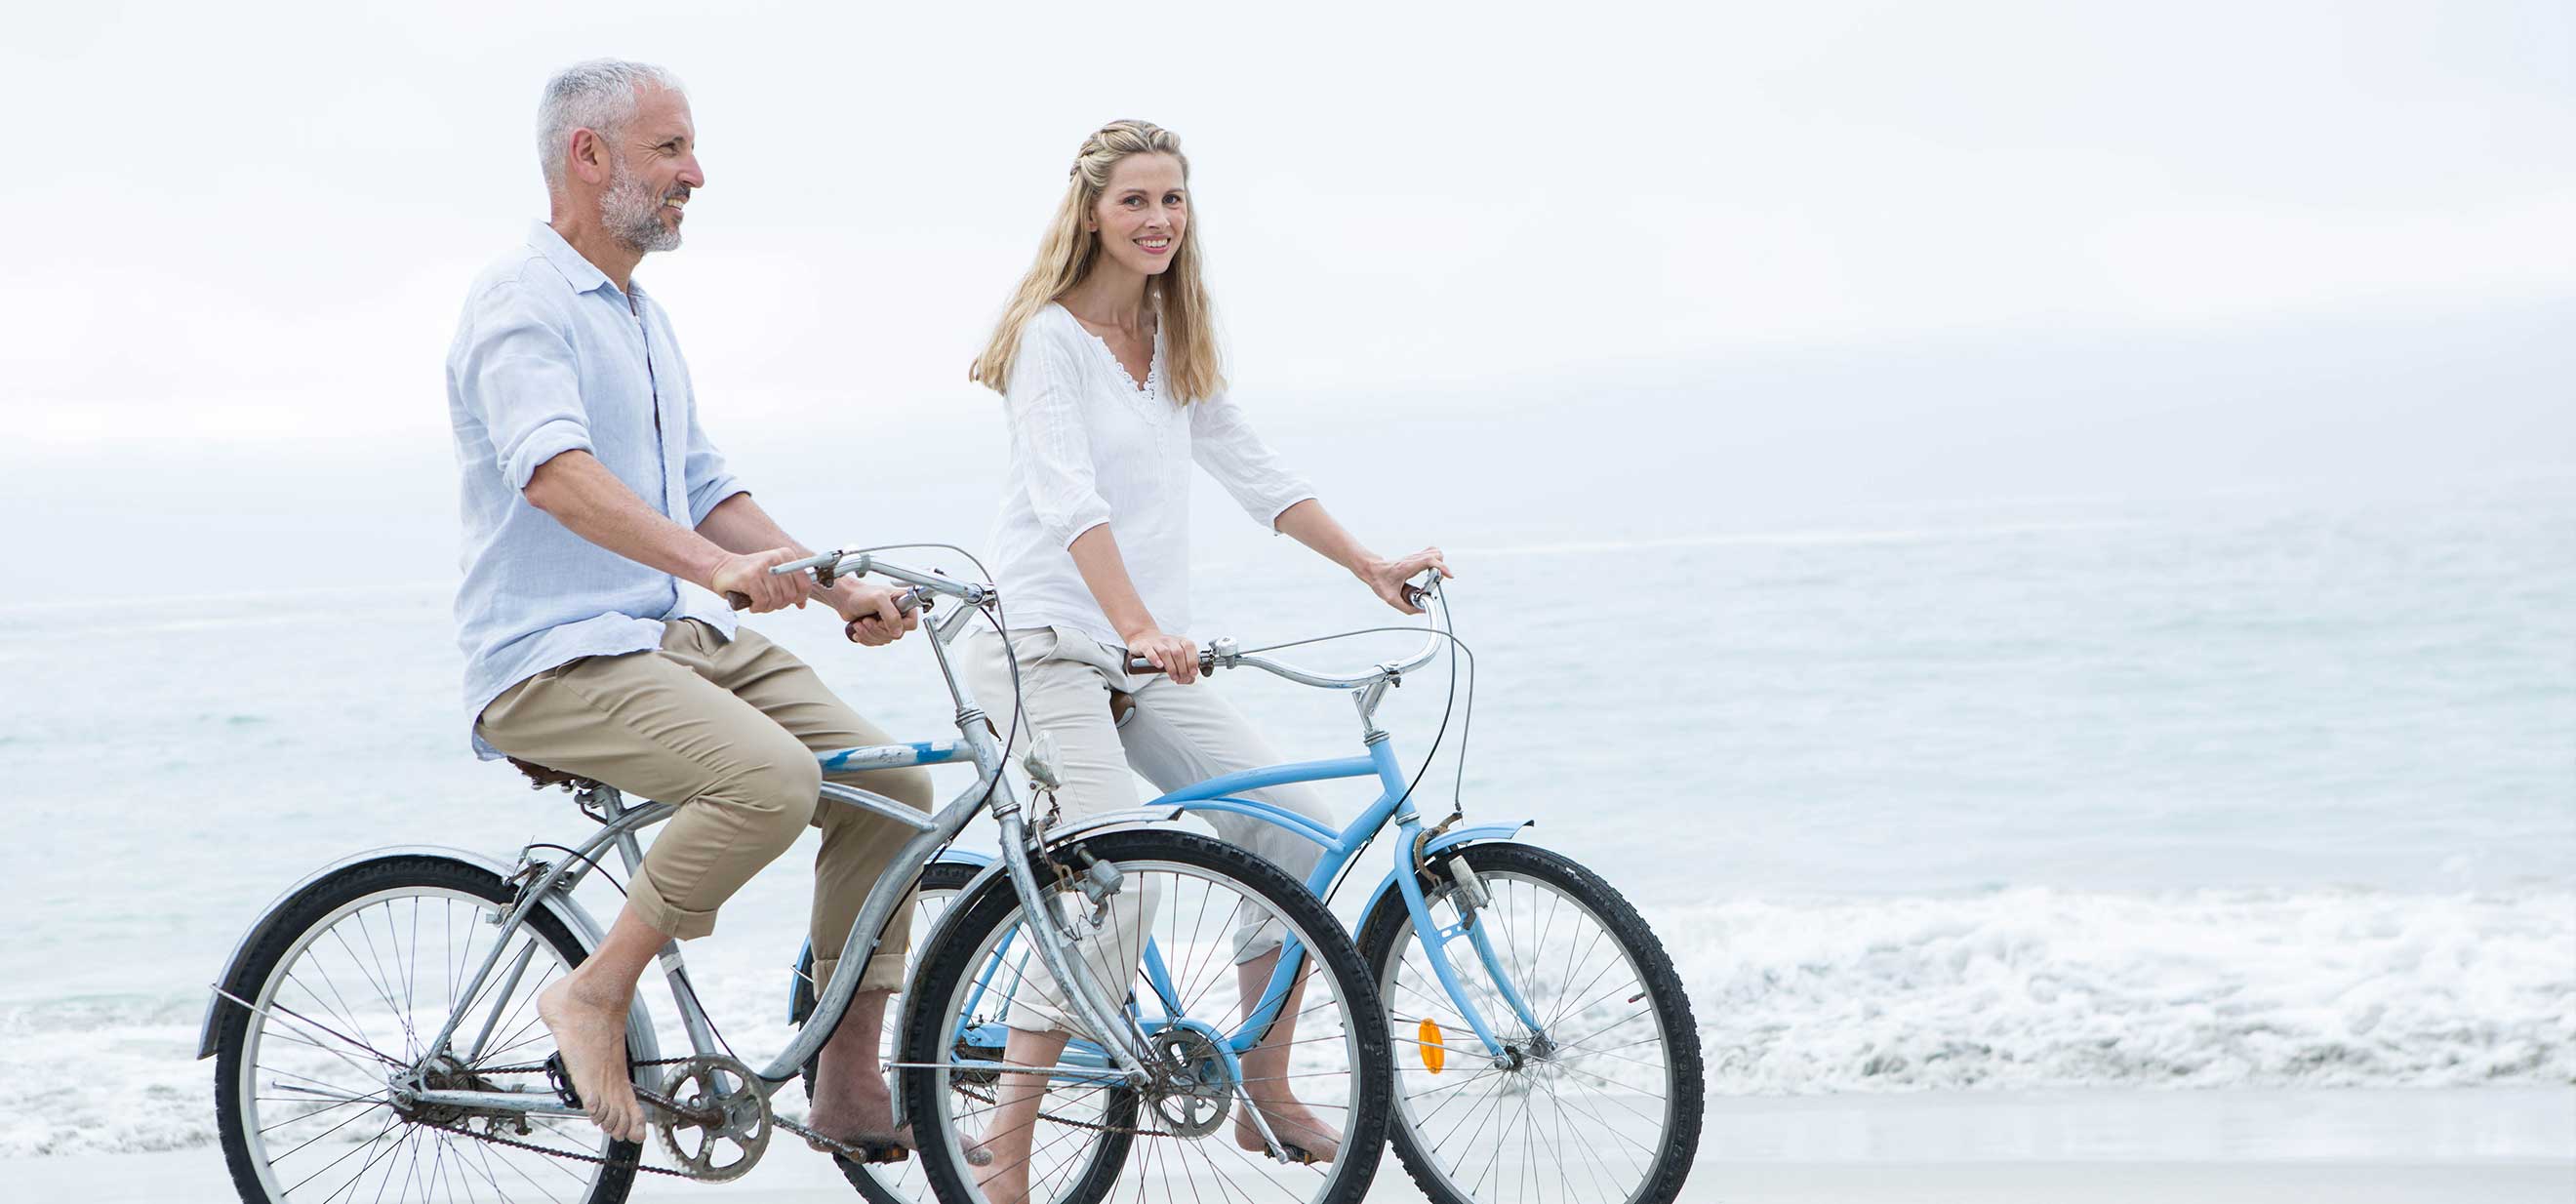 Couple riding bikes on beach